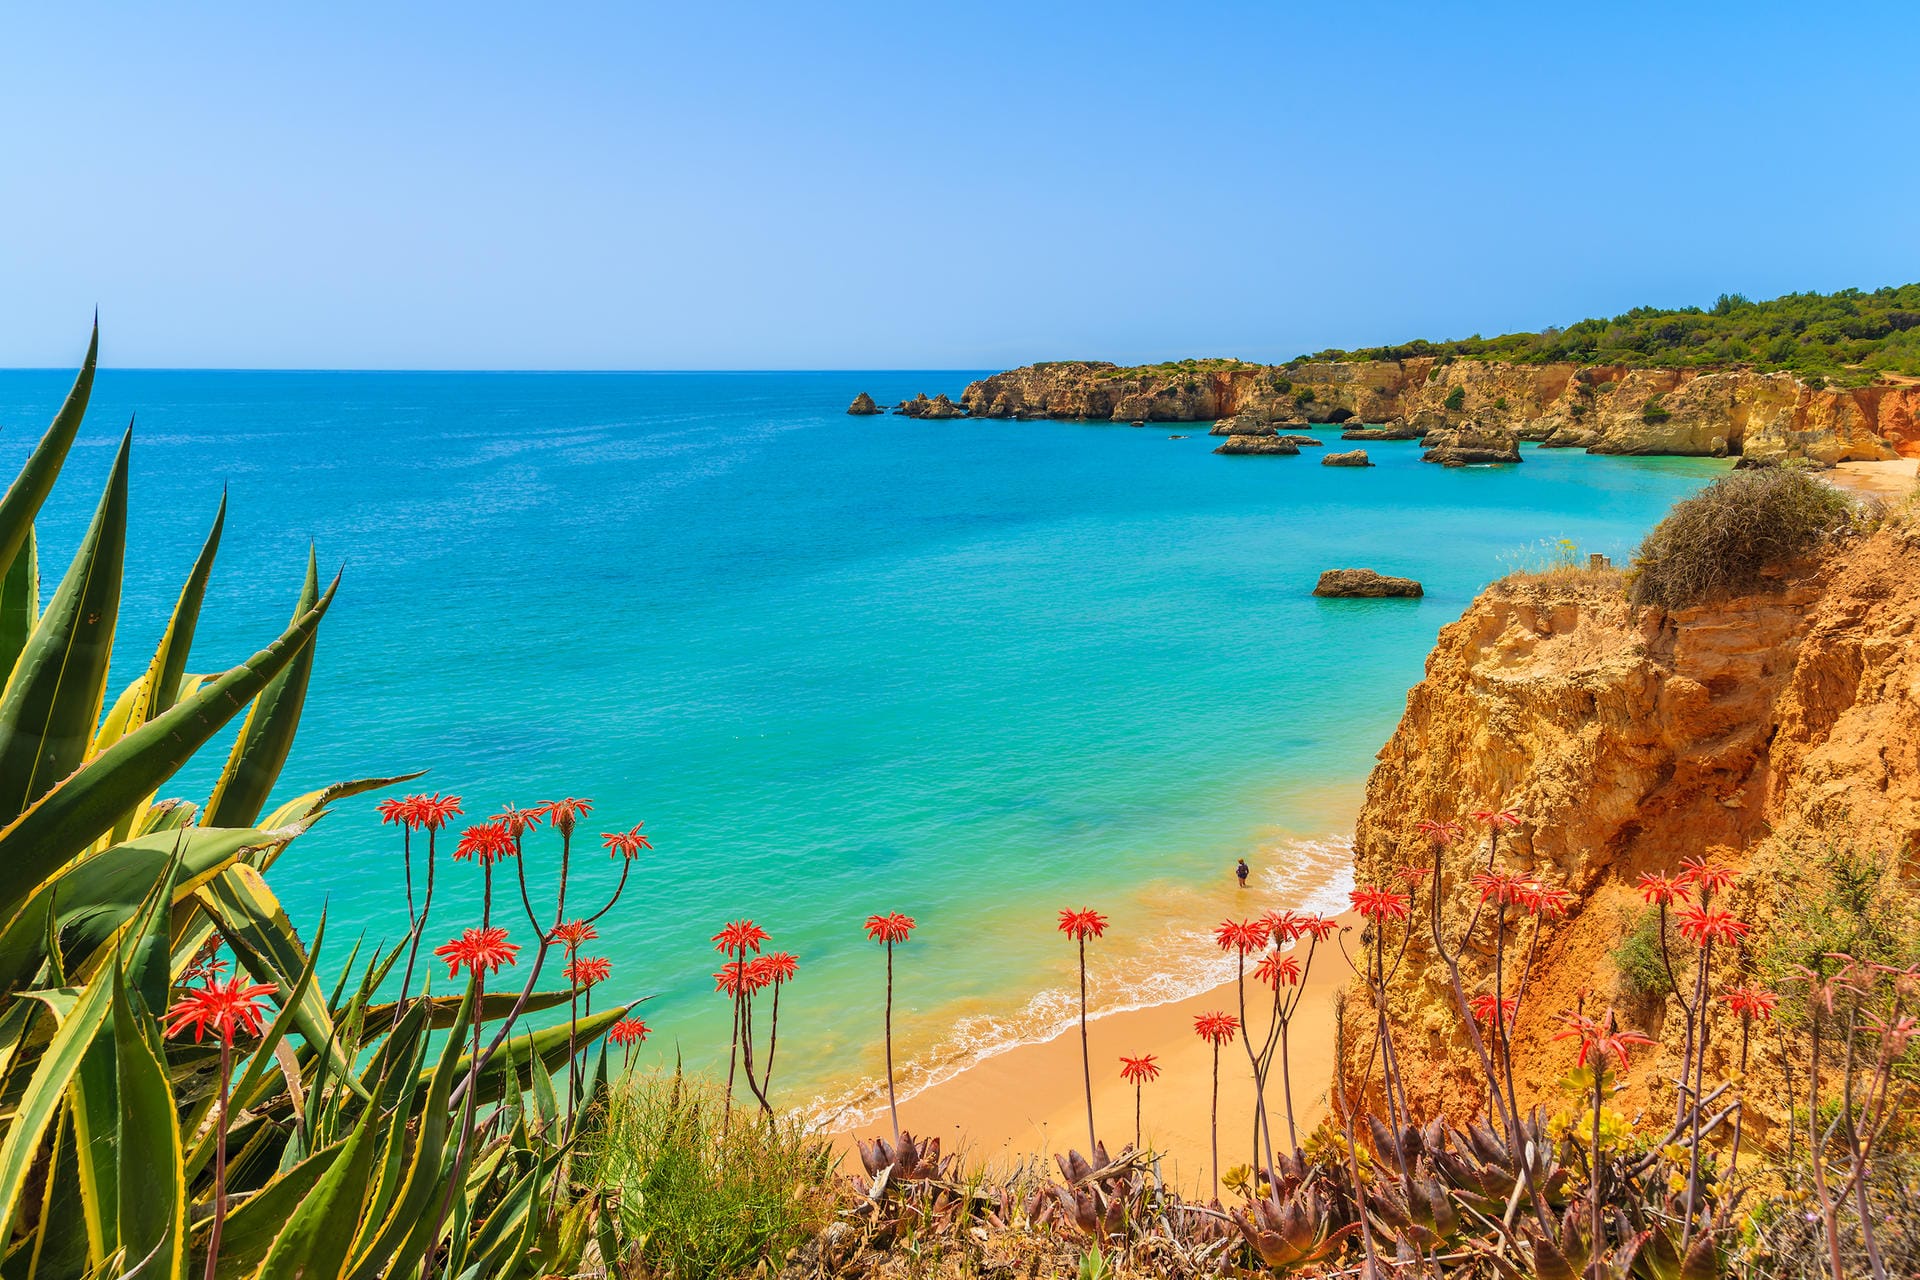 Die Algarve ist die südlichste Region Portugals und eins der südlichsten Urlaubsziele auf europäischem Festland. Kein Wunder also, dass man hier schon im Frühjahr warme Temperaturen erwarten darf.